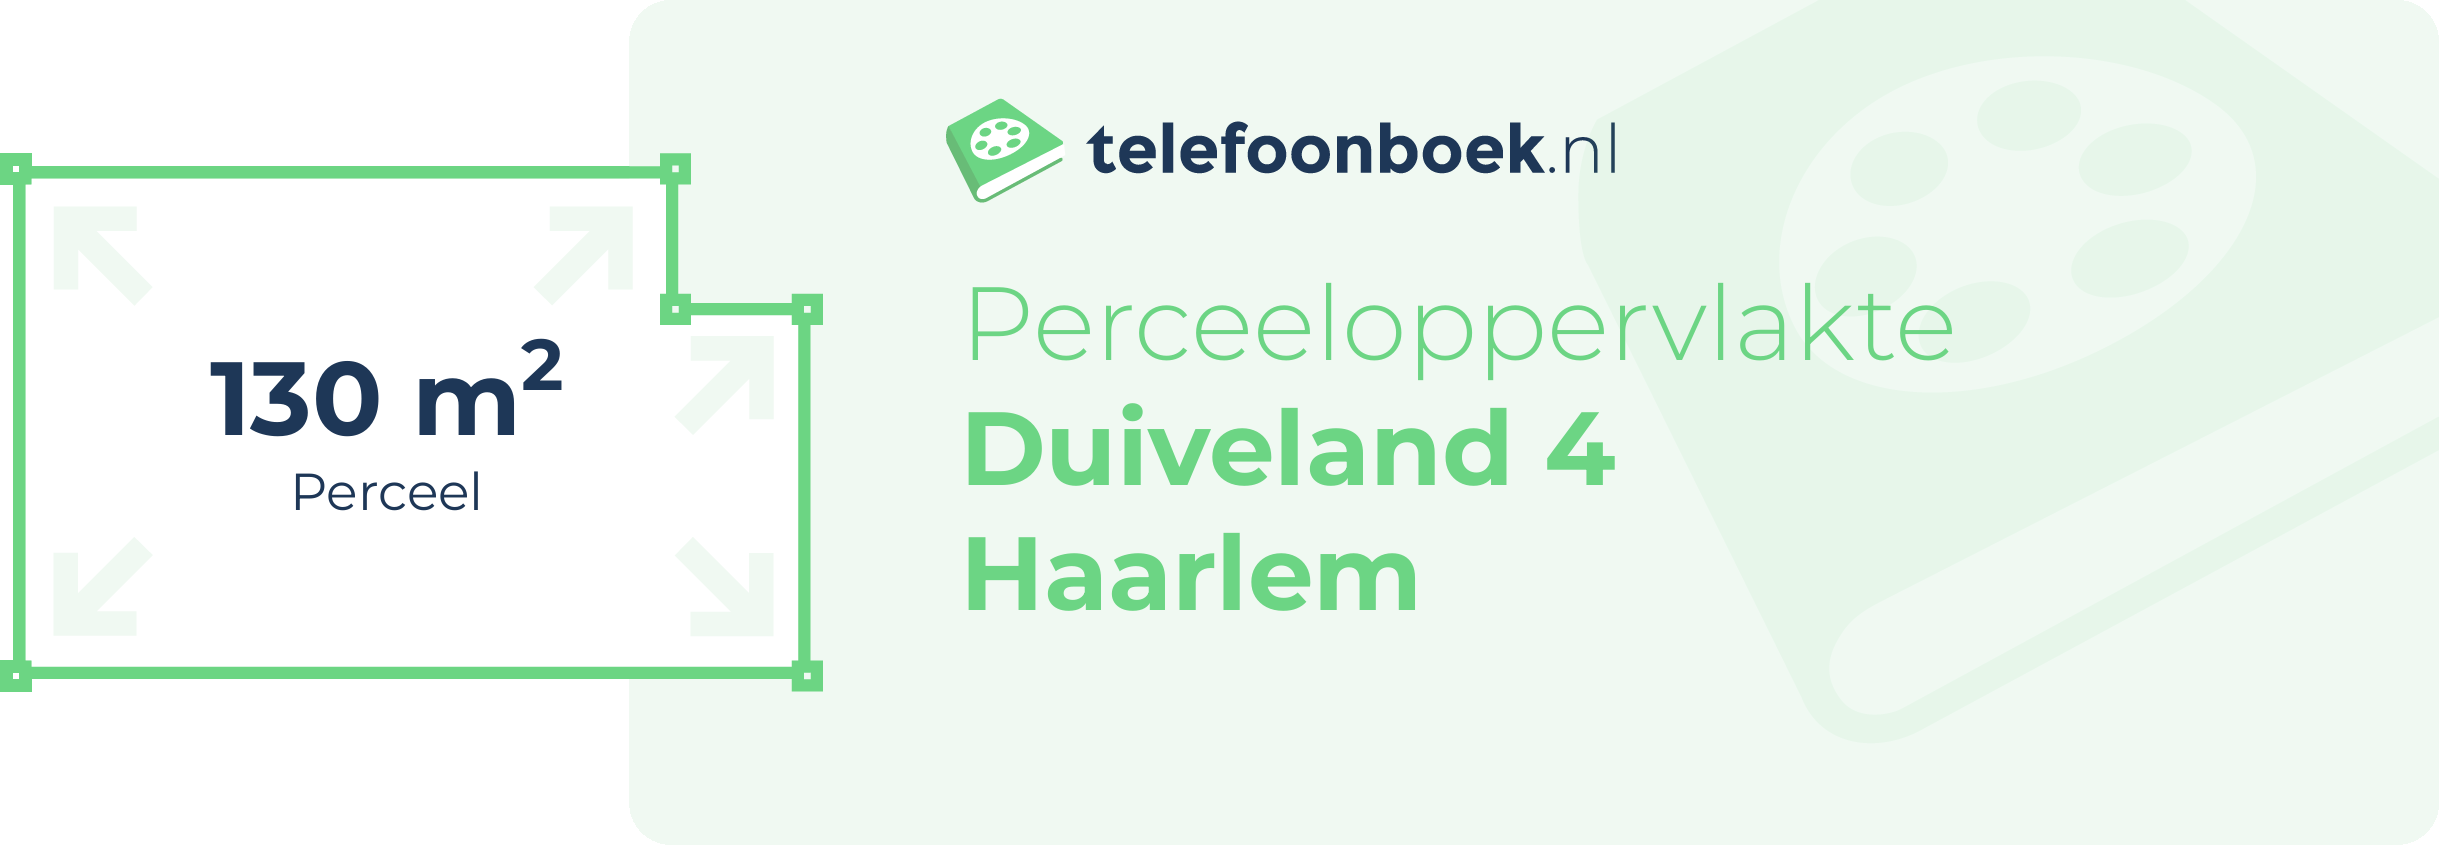 Perceeloppervlakte Duiveland 4 Haarlem